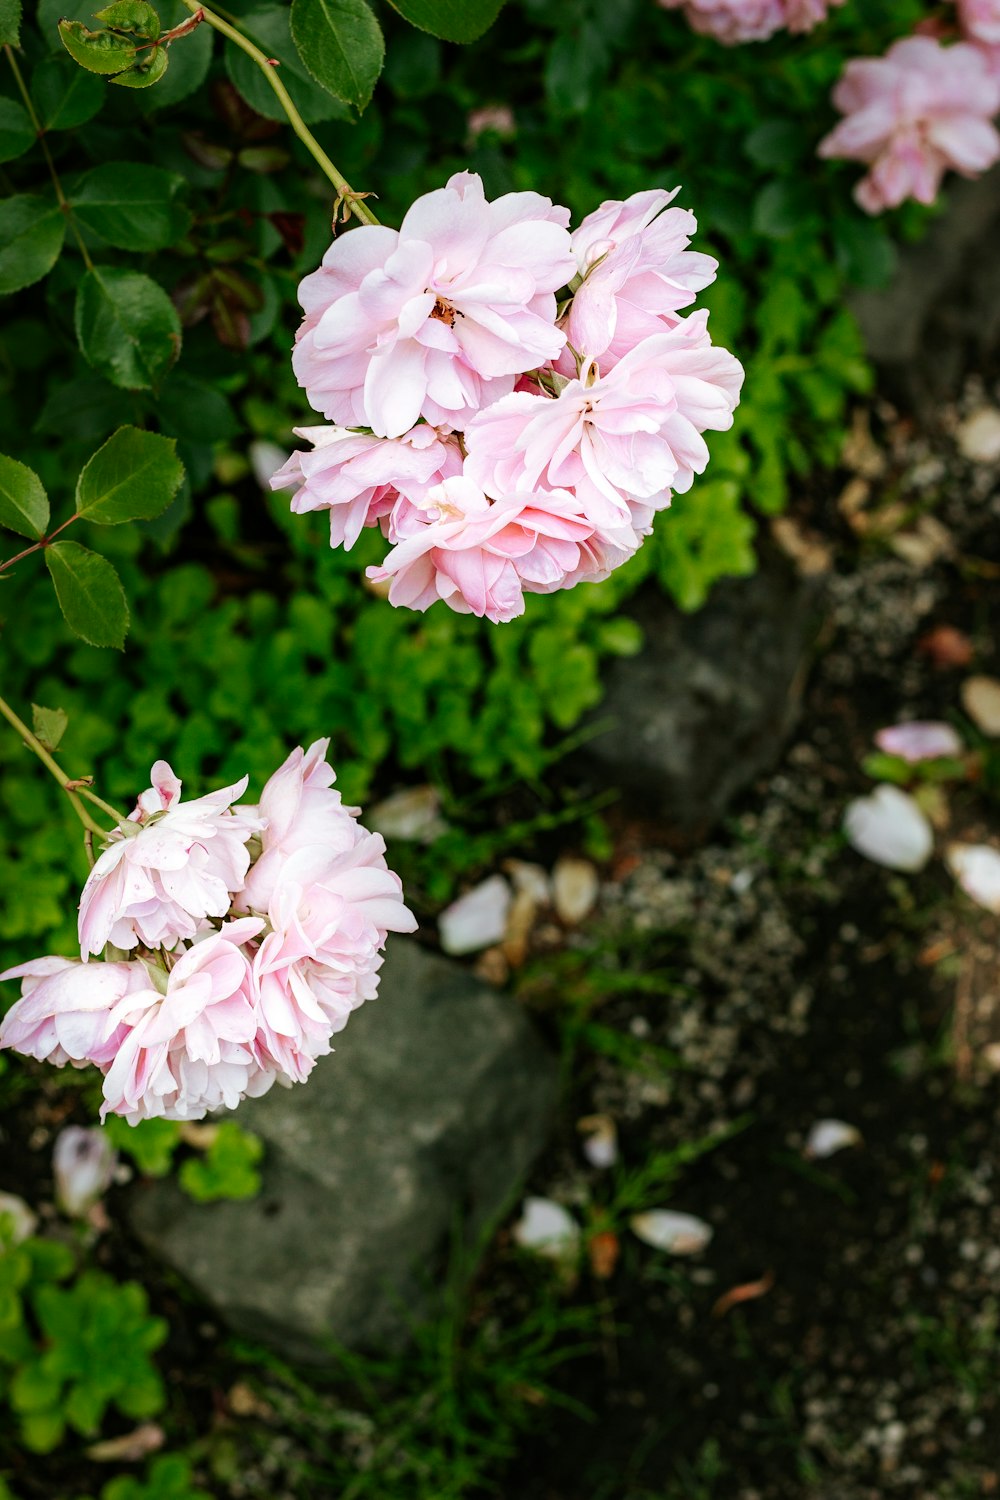 flores cor-de-rosa e brancas em folhas verdes